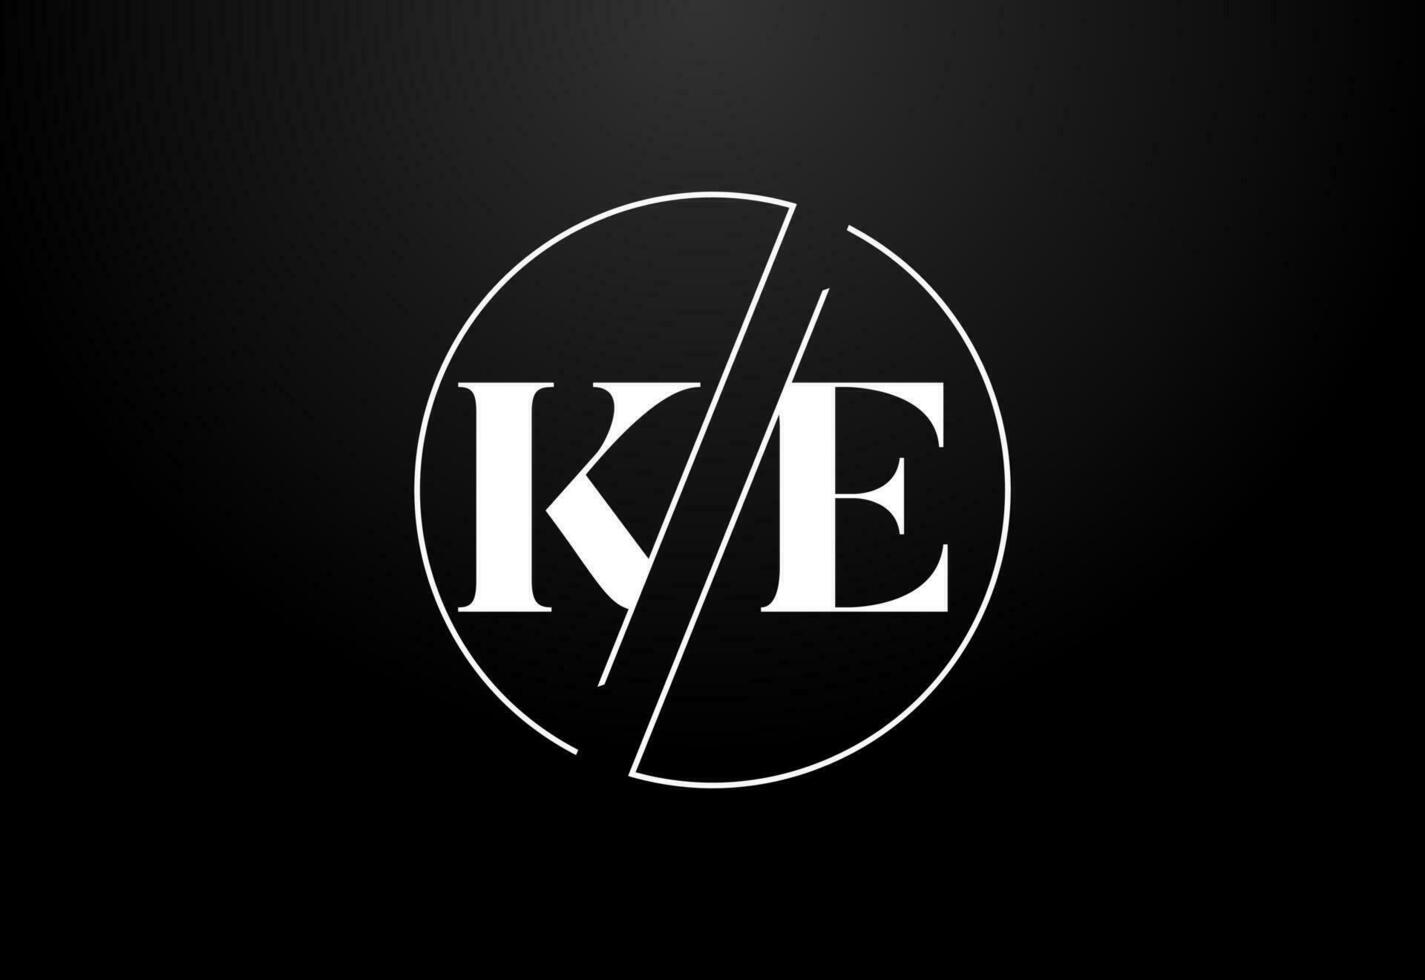 Initial Letter K E Logo Design Vector Template. KE Letter Logo Design